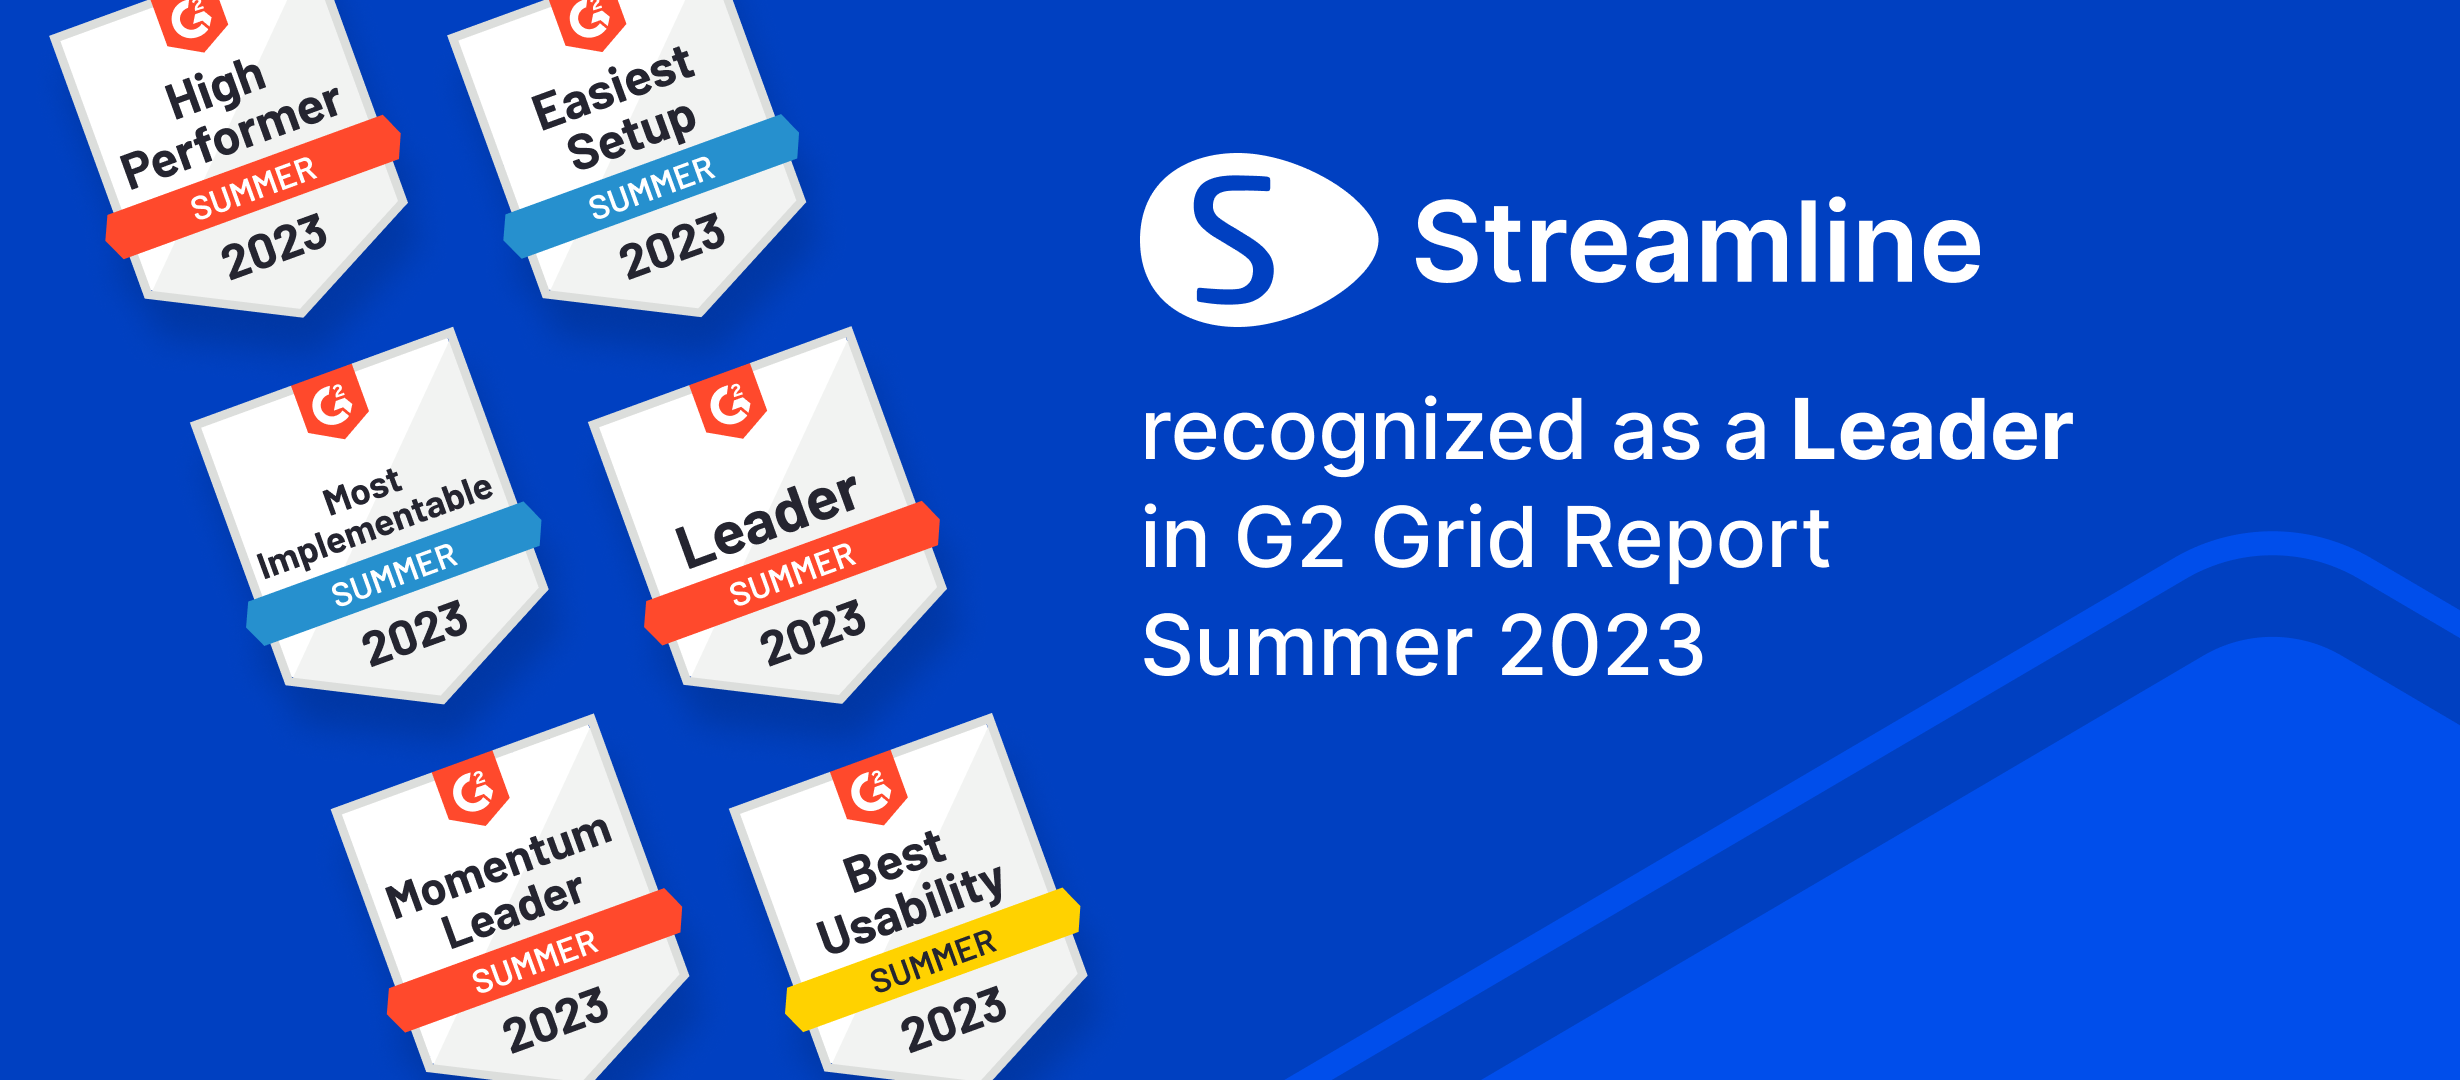 GMDH Streamline ได้รับเลือกให้เป็นผู้นำในหลายหมวดหมู่ในรายงาน G2 Summer'23 | GMDH